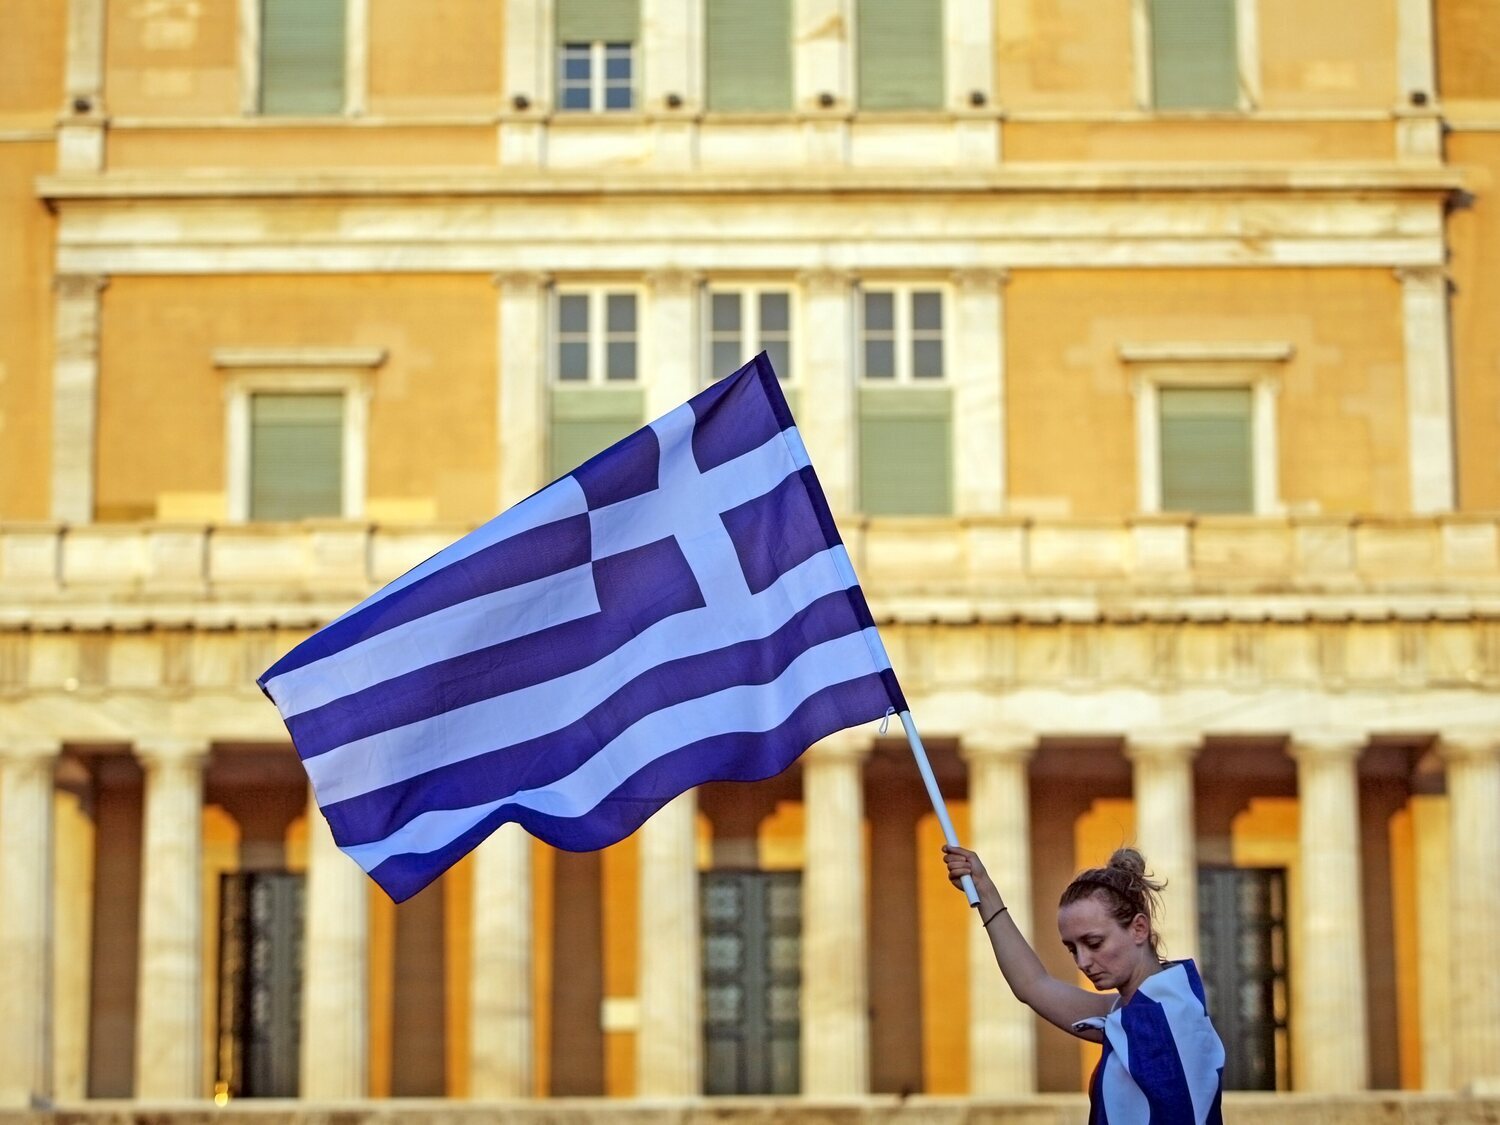 Grecia aprueba la reforma laboral con jornadas de 13 horas y seis días de trabajo a la semana